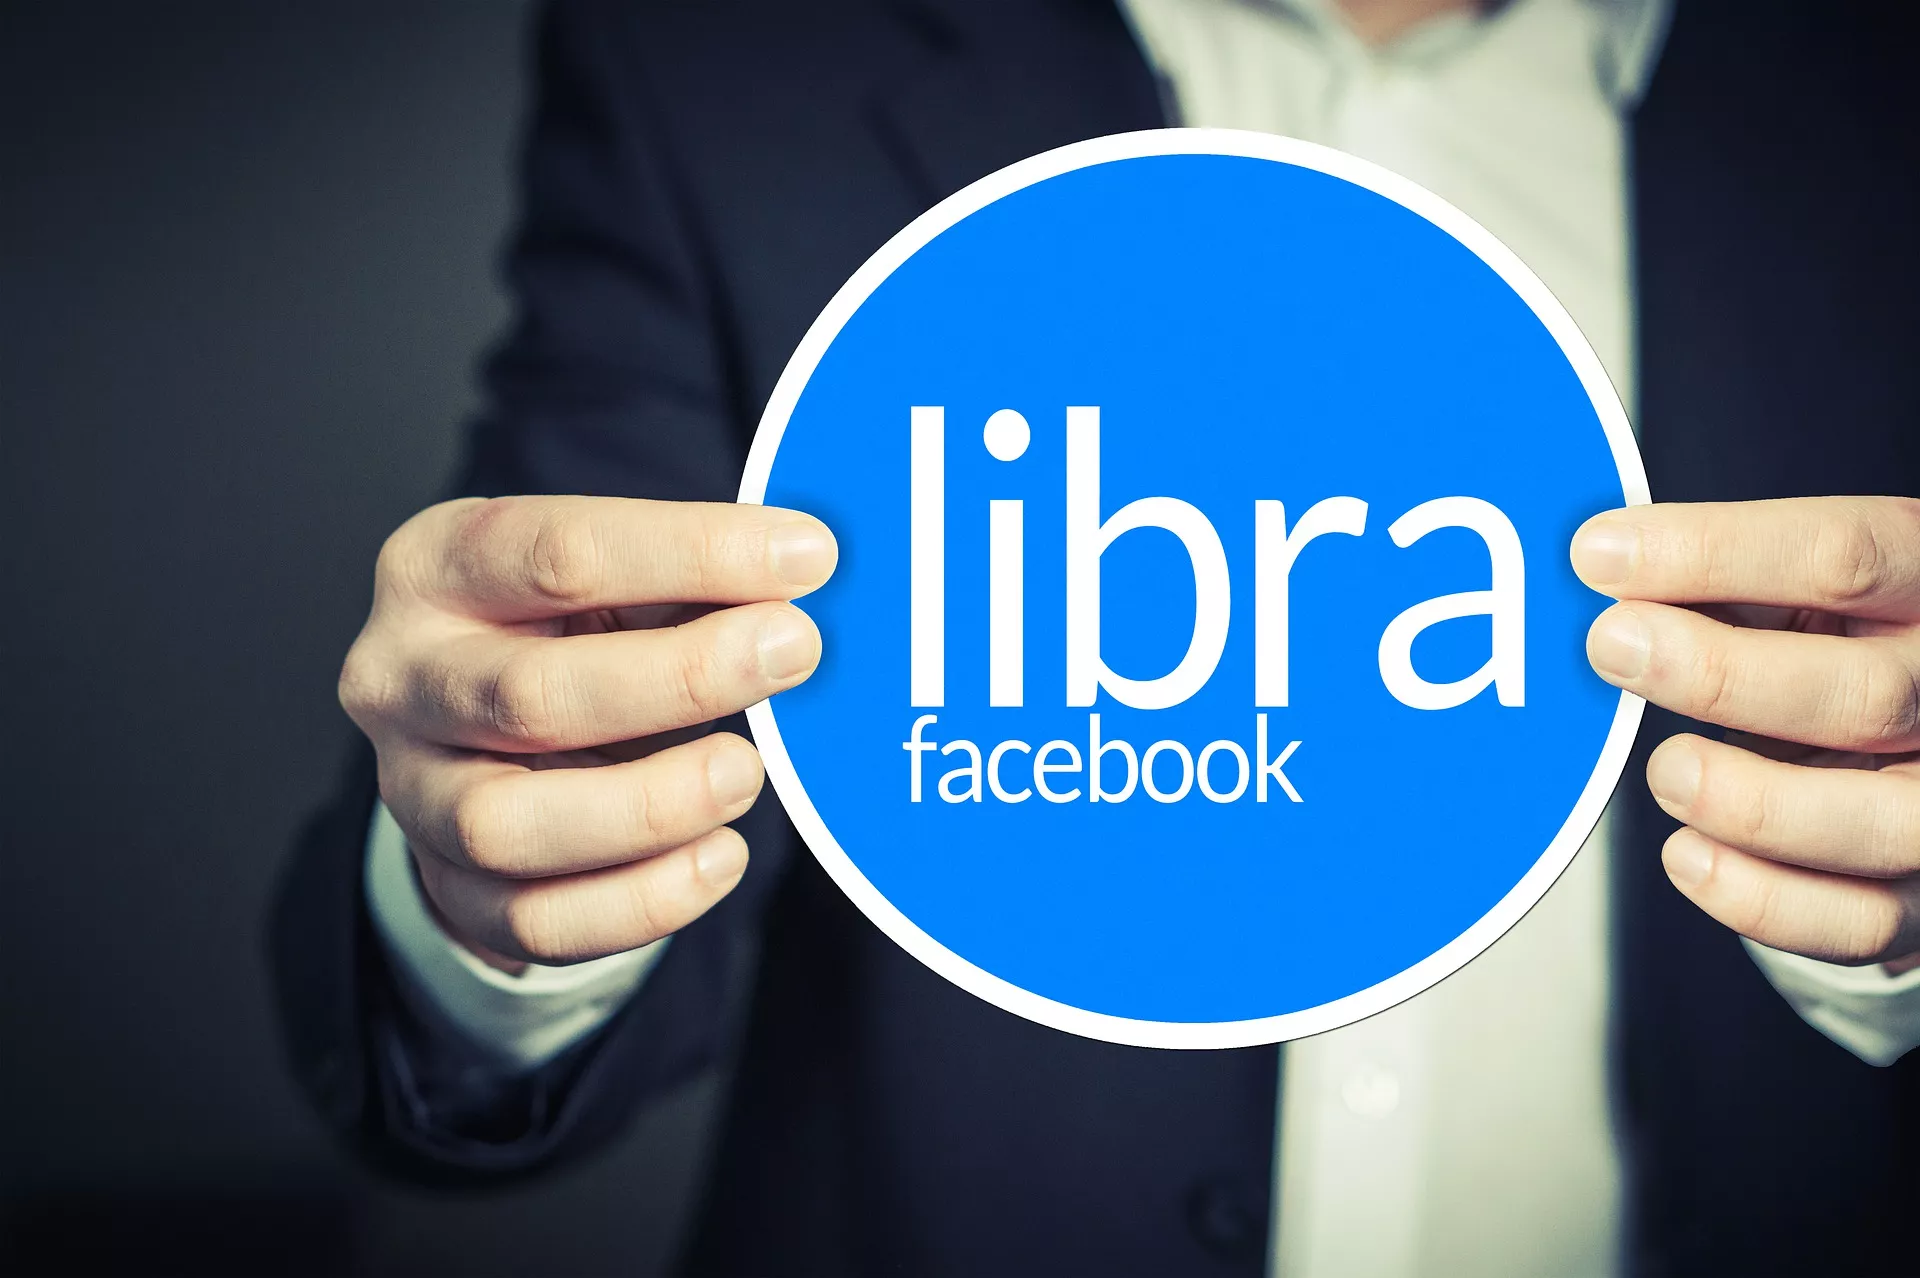 Wedden wanneer Facebook’s Libra wordt gelanceerd? Dat kan